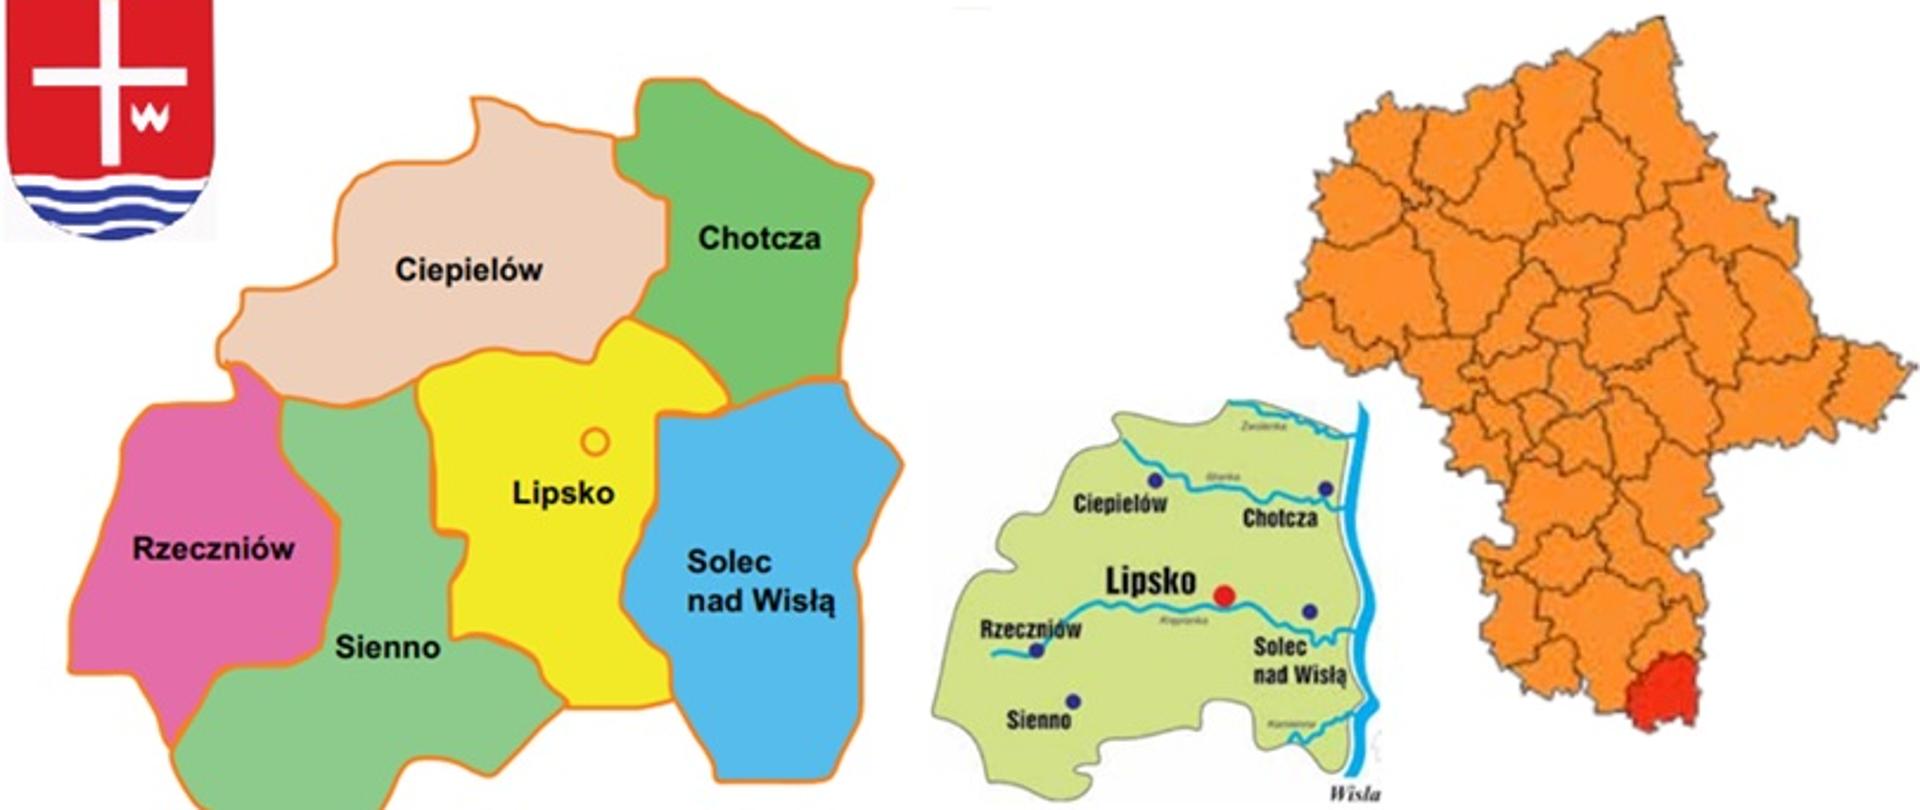 Mapa powiatu lipskiego z podziałem na gminy, wskazaniem położenia w województwie oraz przedstawiono herb powiatu lipskiego